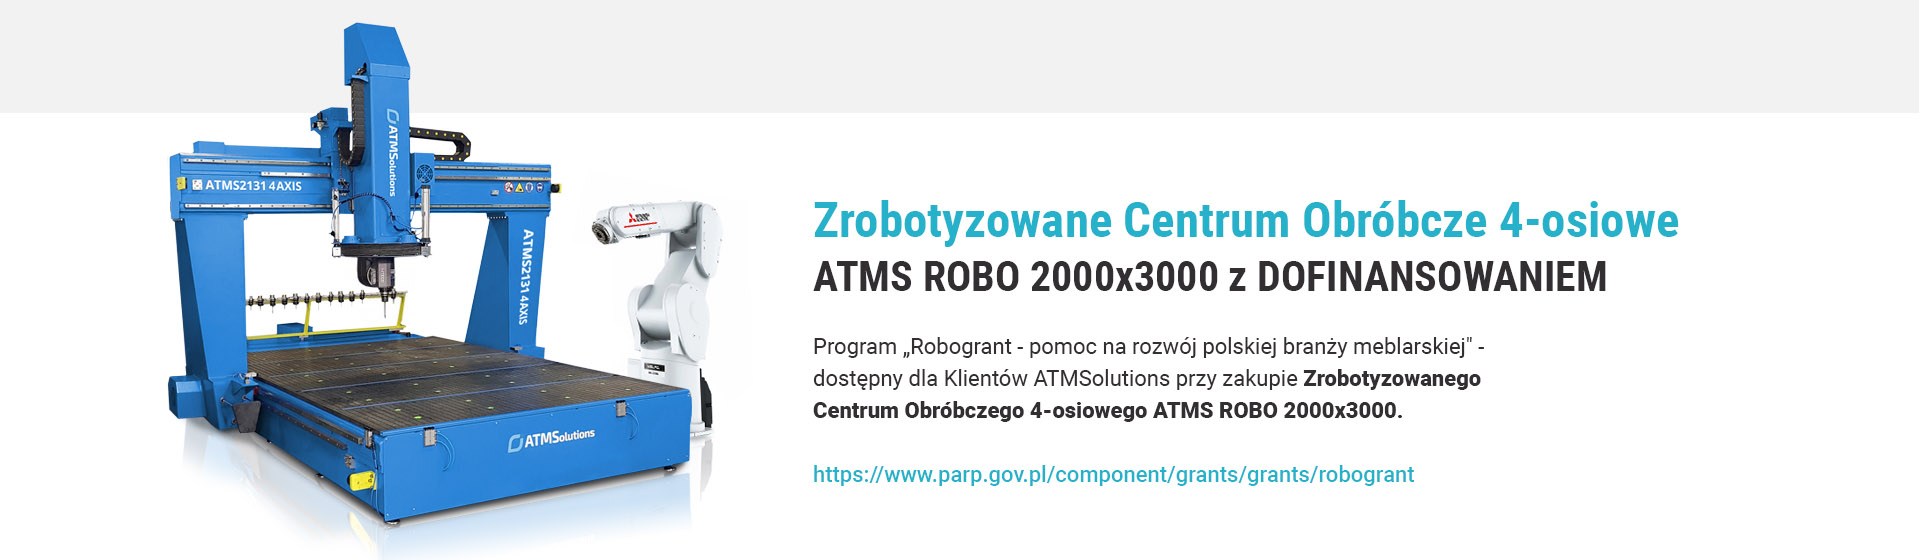 Zrobotyzowane Centrum Obróbcze 4-osiowe ATMS ROBO 2000x3000 z DOFINANSOWANIEM